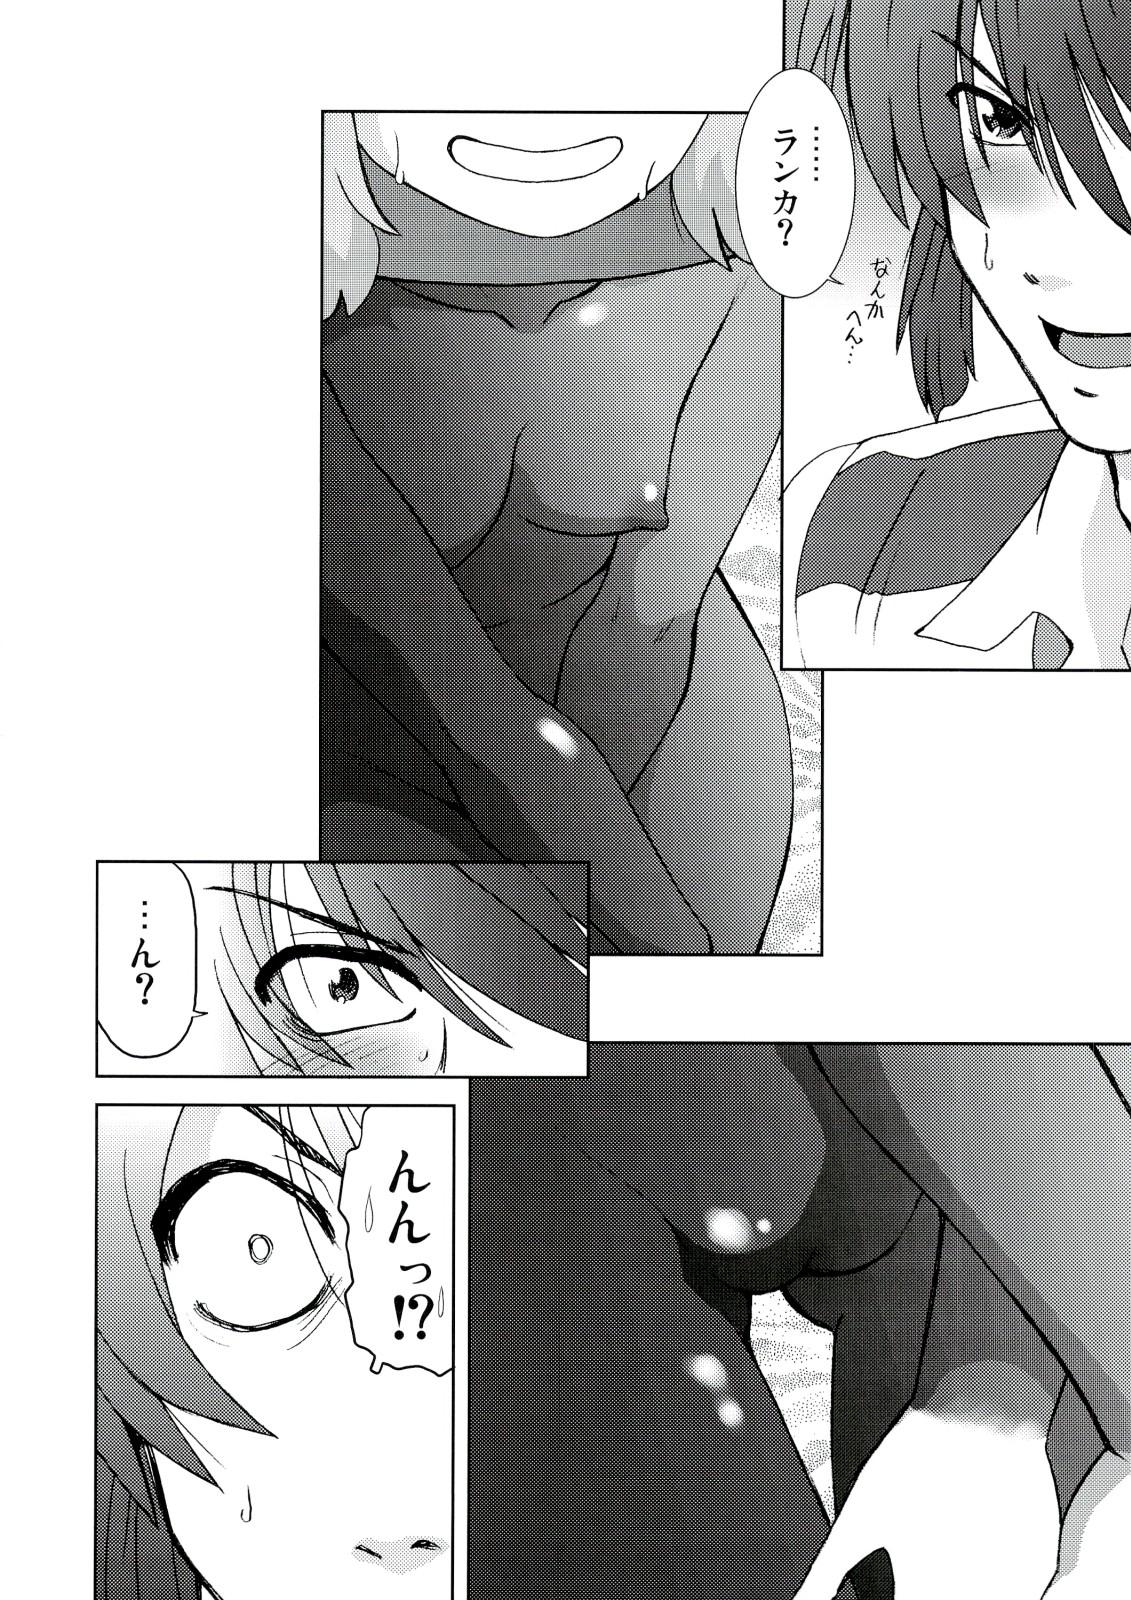 Bubblebutt Kishou Tenketsu 6 - Macross frontier Licking Pussy - Page 9